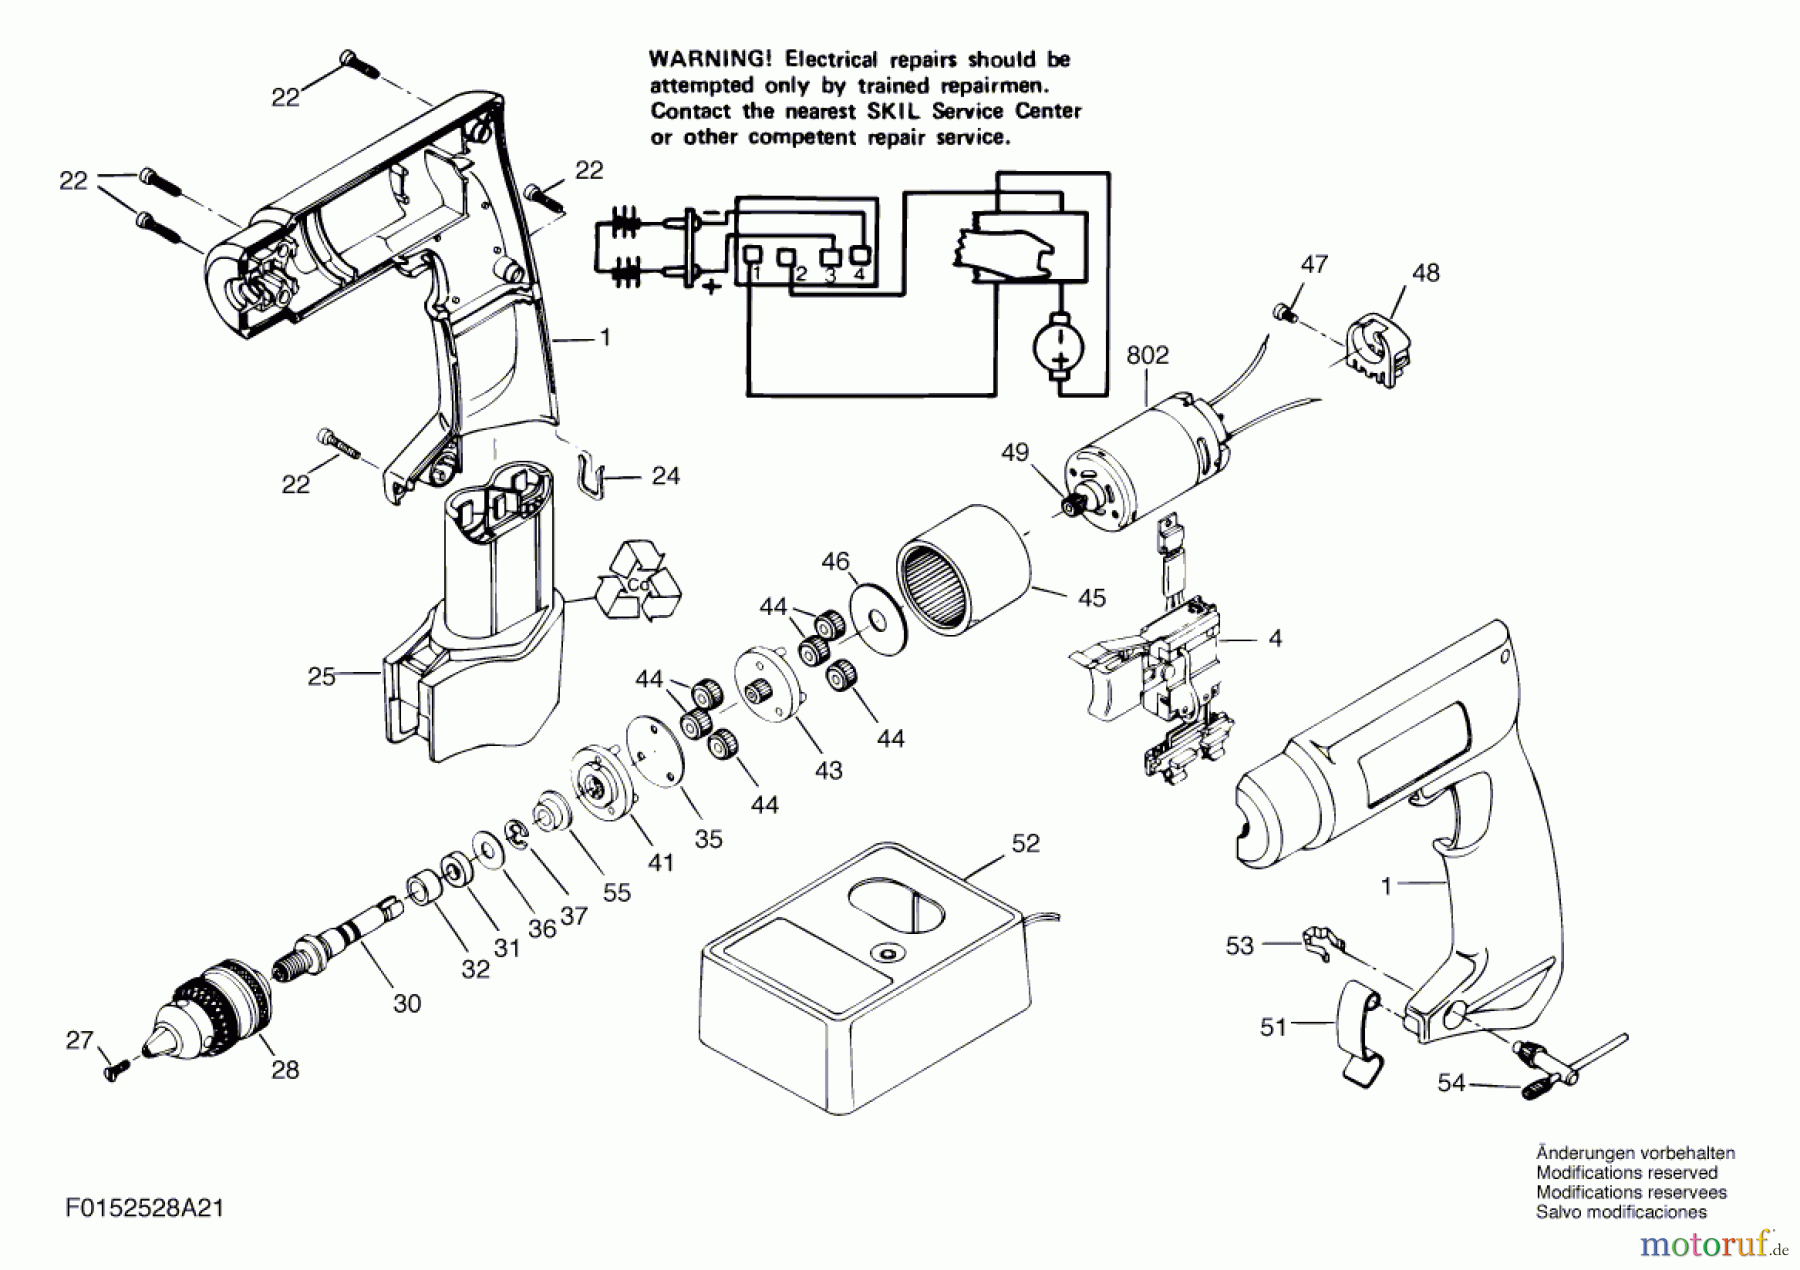  Bosch Werkzeug Drehwerkzeug 2528U2 Seite 1